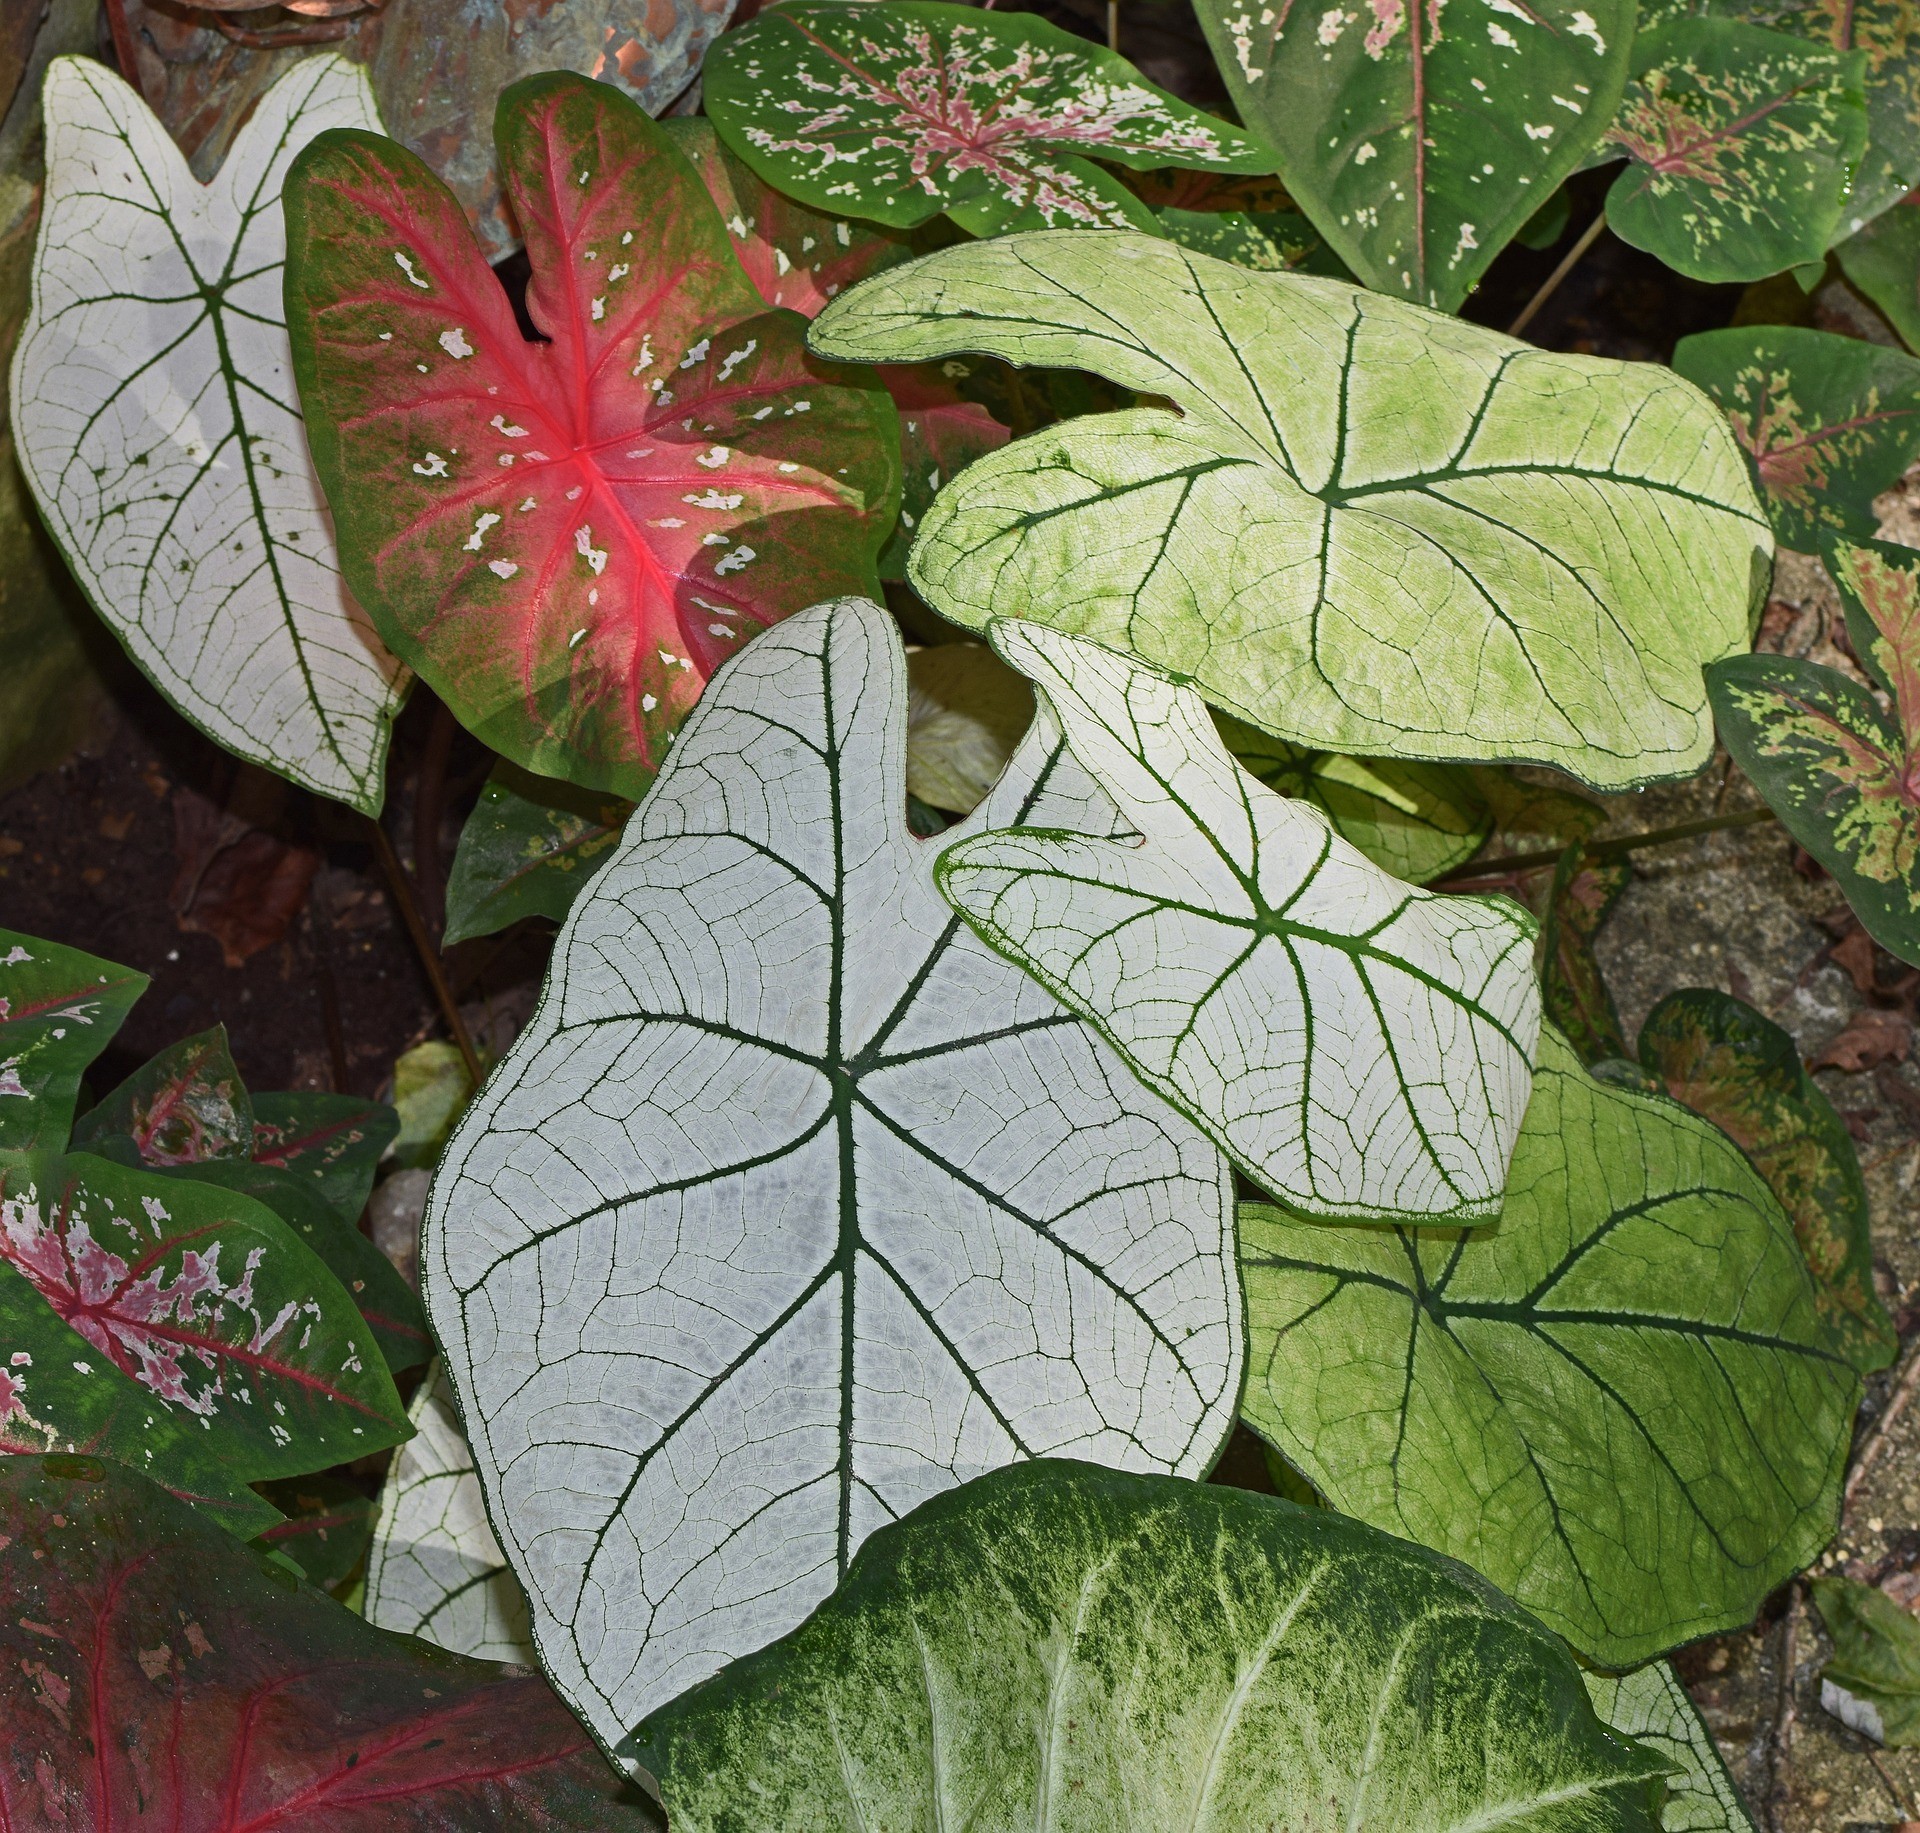 Conheça a caladium, planta ornamental colorida e perfeita para a decoração (Foto: Pixabay)